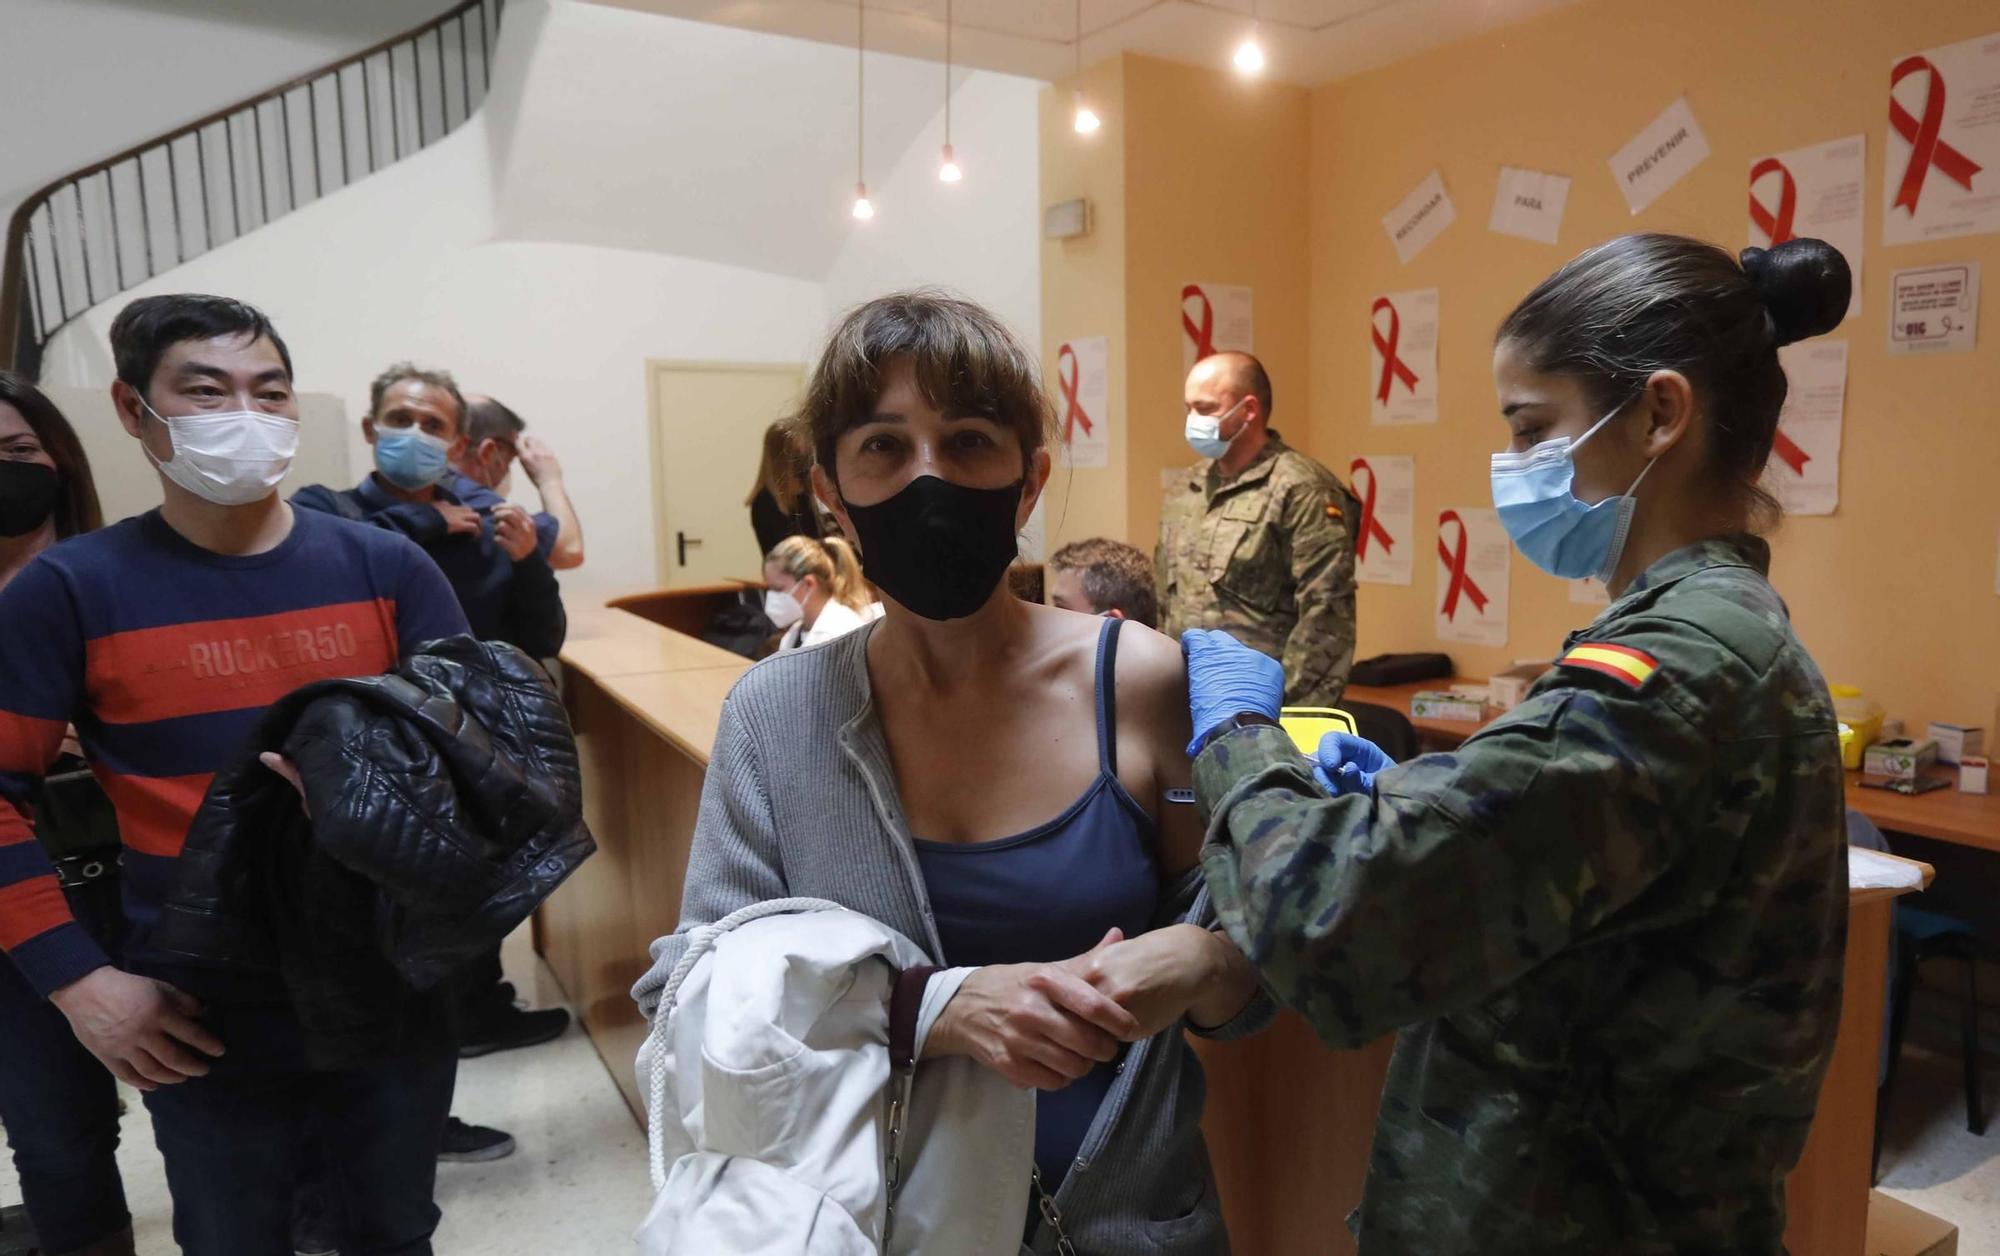 El Ejército comienza a vacunar en el hospital Doctor Peset de València